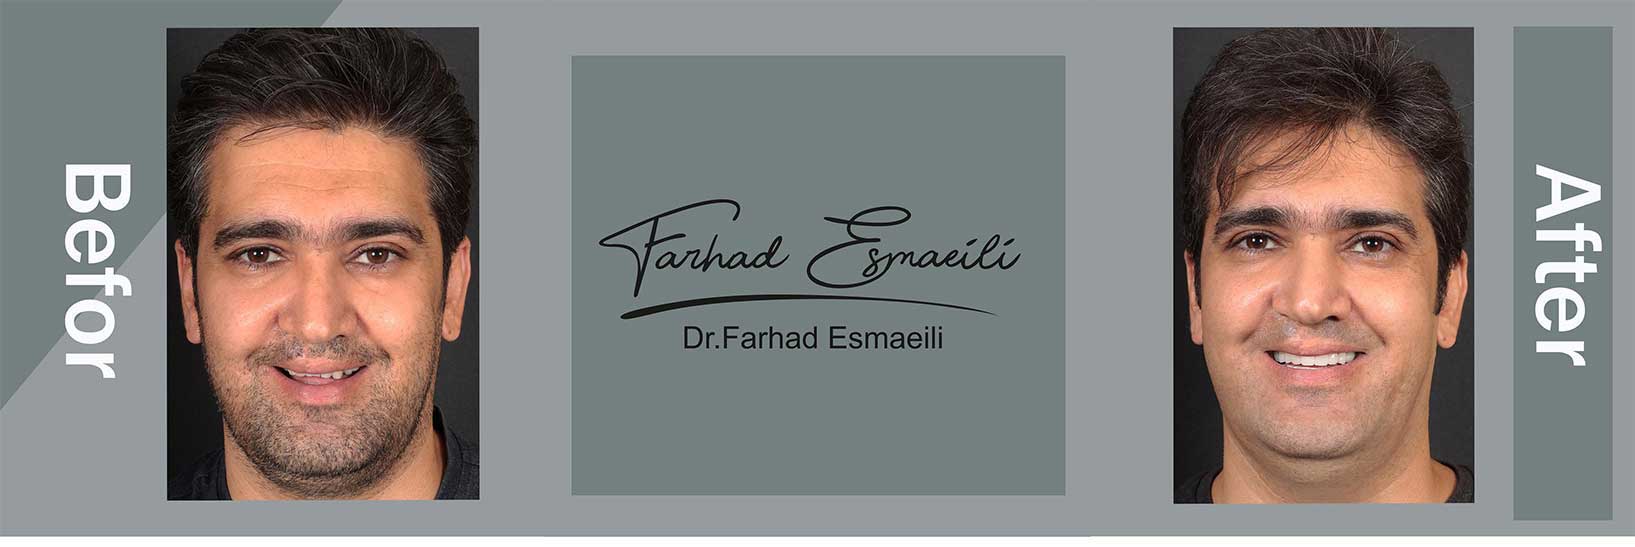 نمونه کار ایمپلنت دیجیتال در اصفهان توسط دکتر فرهاد اسماعیلی